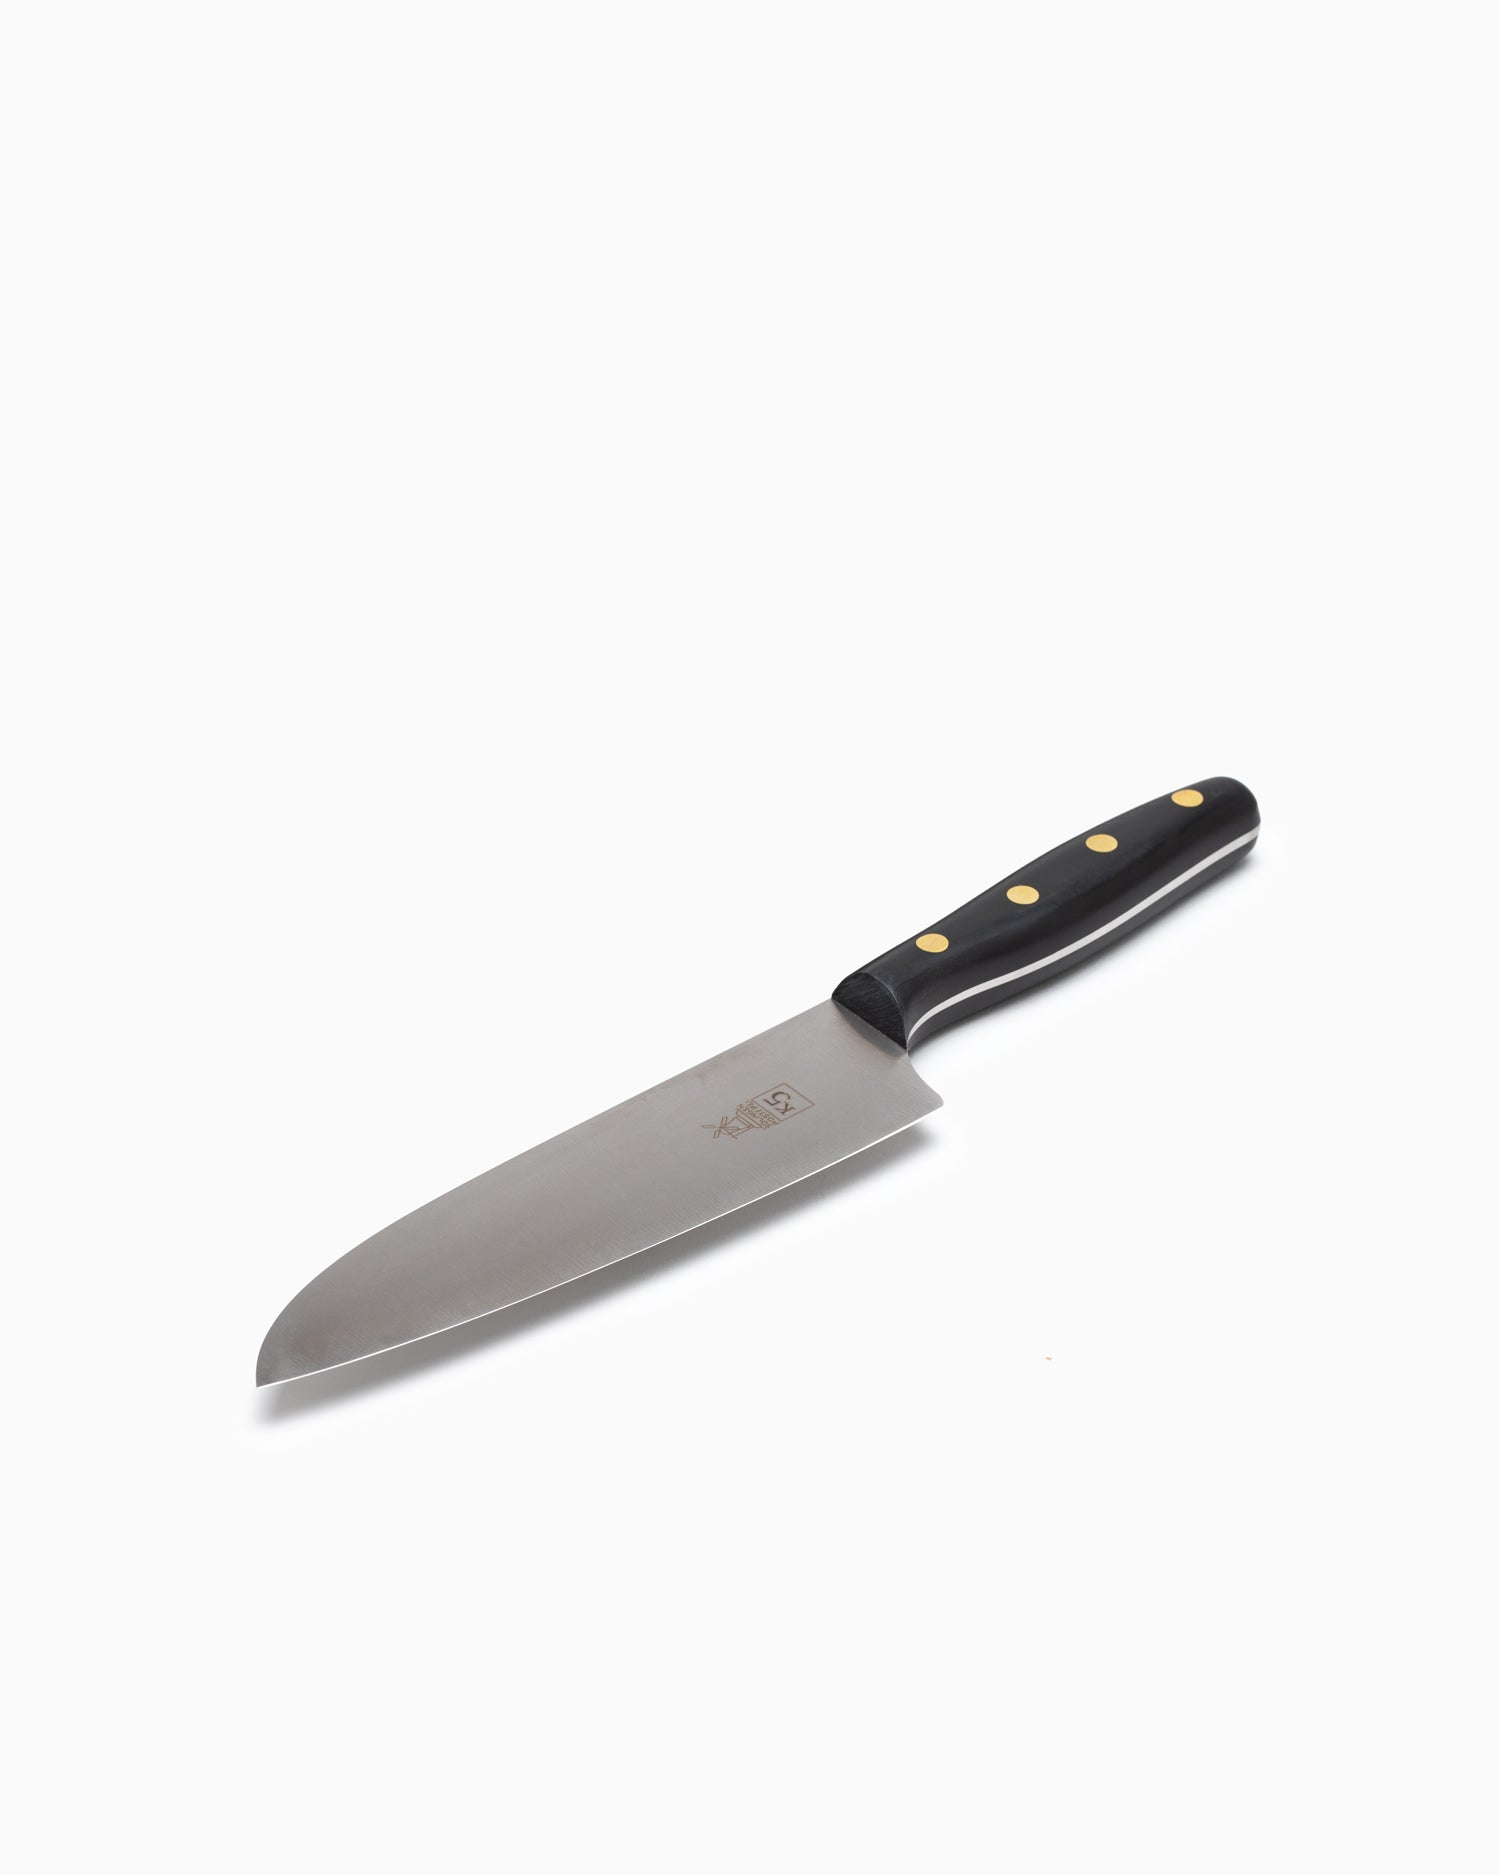 Robert Herder K5 Kitchen Knife - Stainless